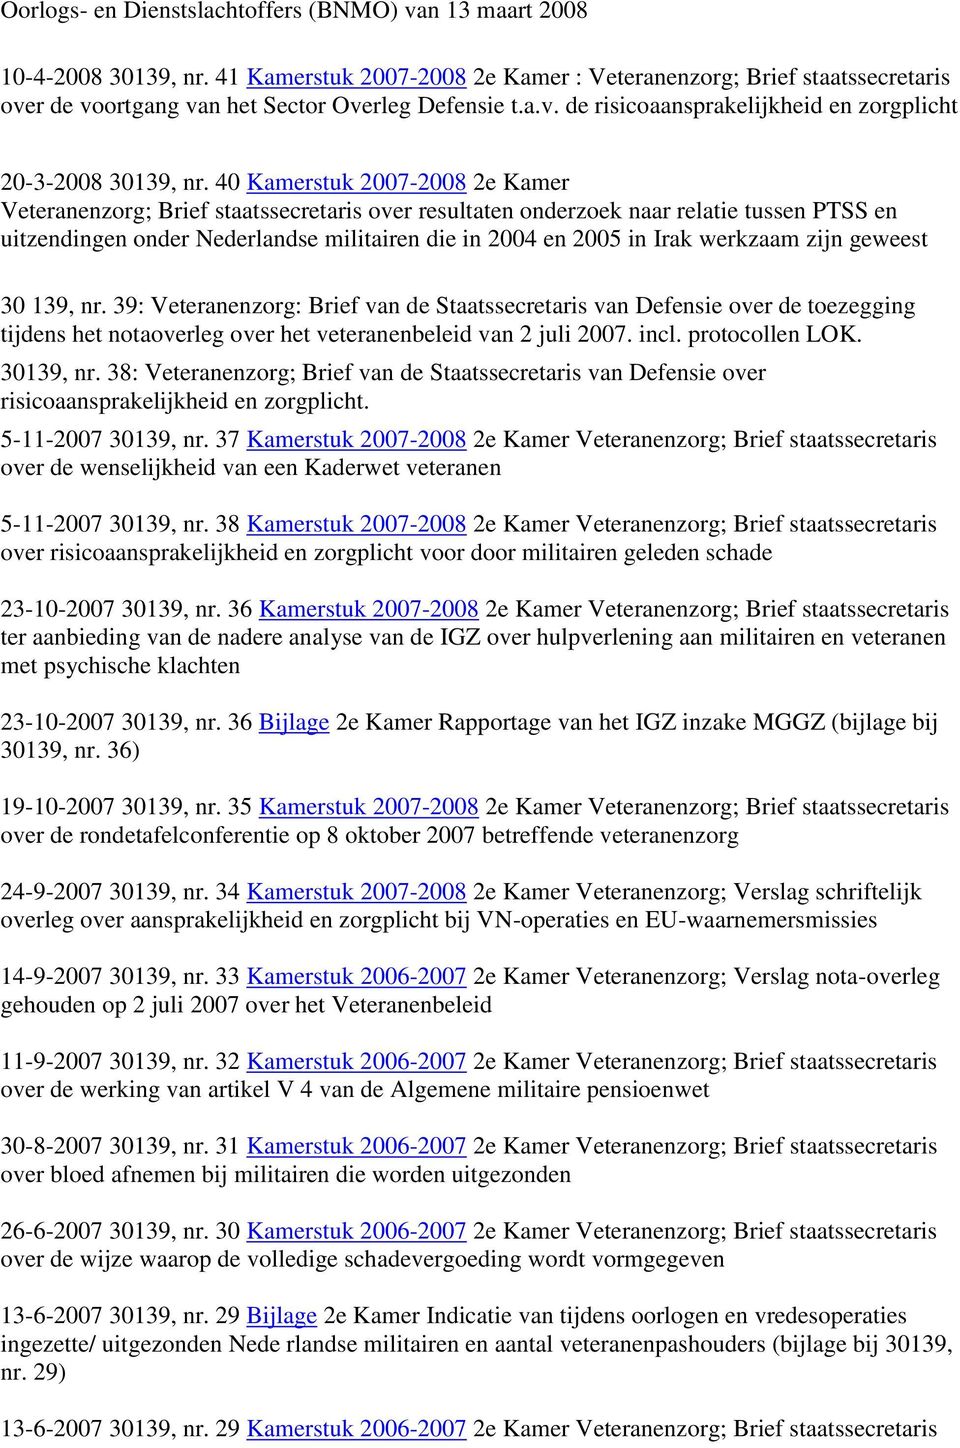 40 Kamerstuk 2007-2008 2e Kamer Veteranenzorg; Brief staatssecretaris over resultaten onderzoek naar relatie tussen PTSS en uitzendingen onder Nederlandse militairen die in 2004 en 2005 in Irak